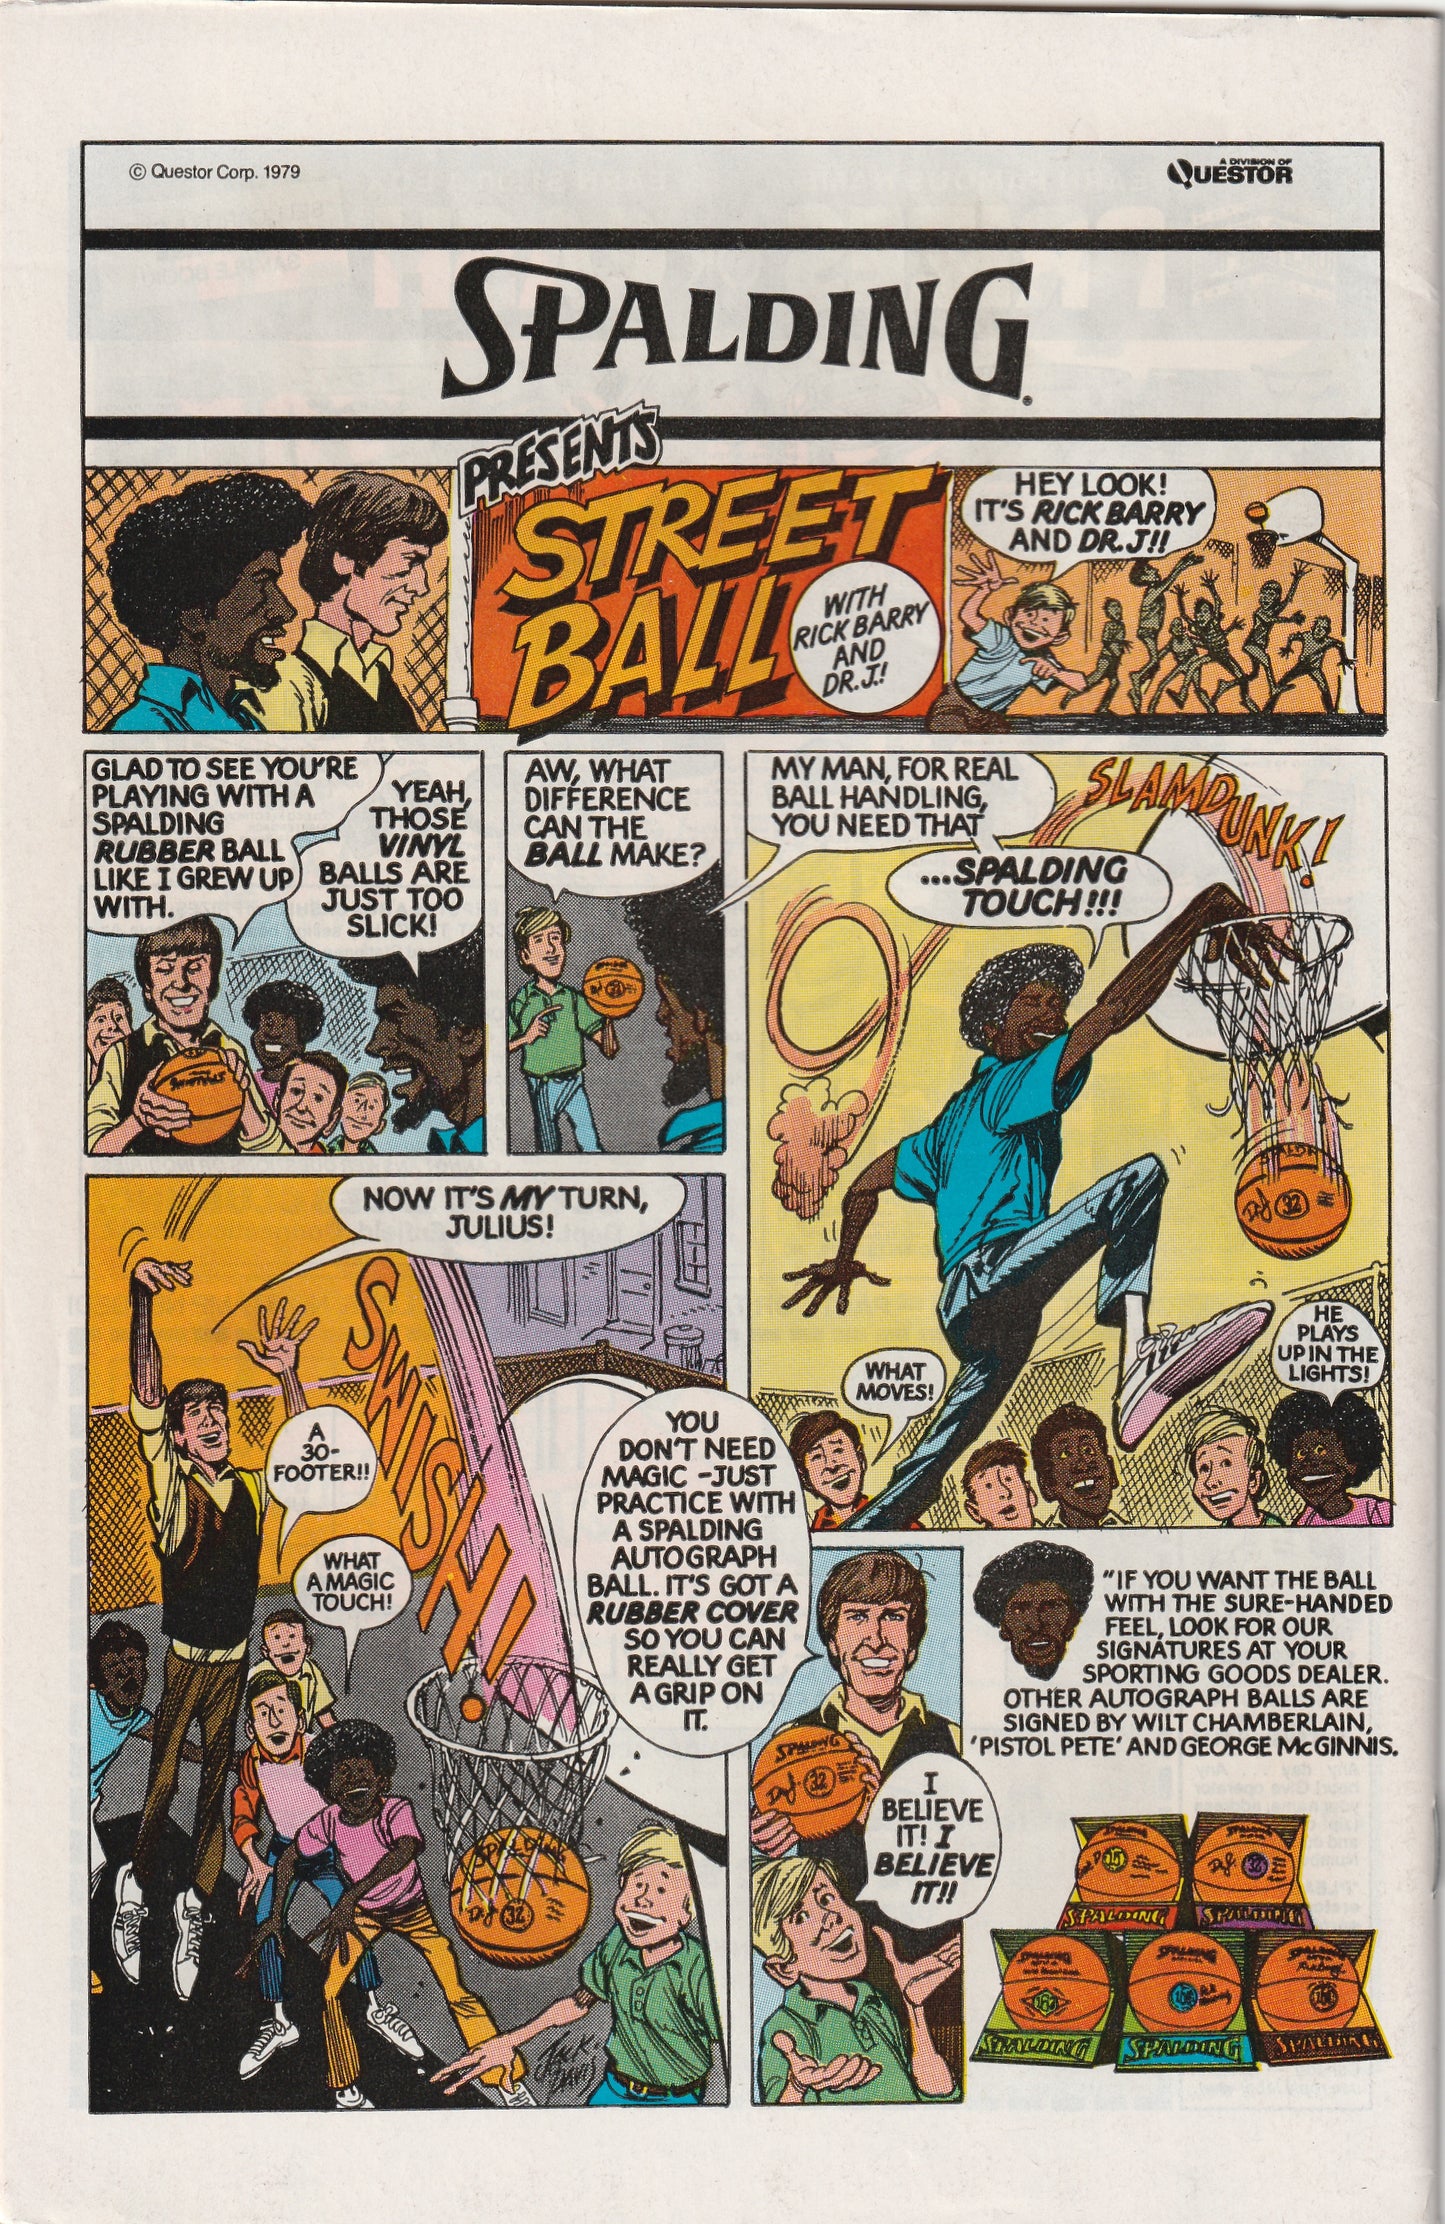 Avengers #184 (1979) - Falcon joins Avengers team